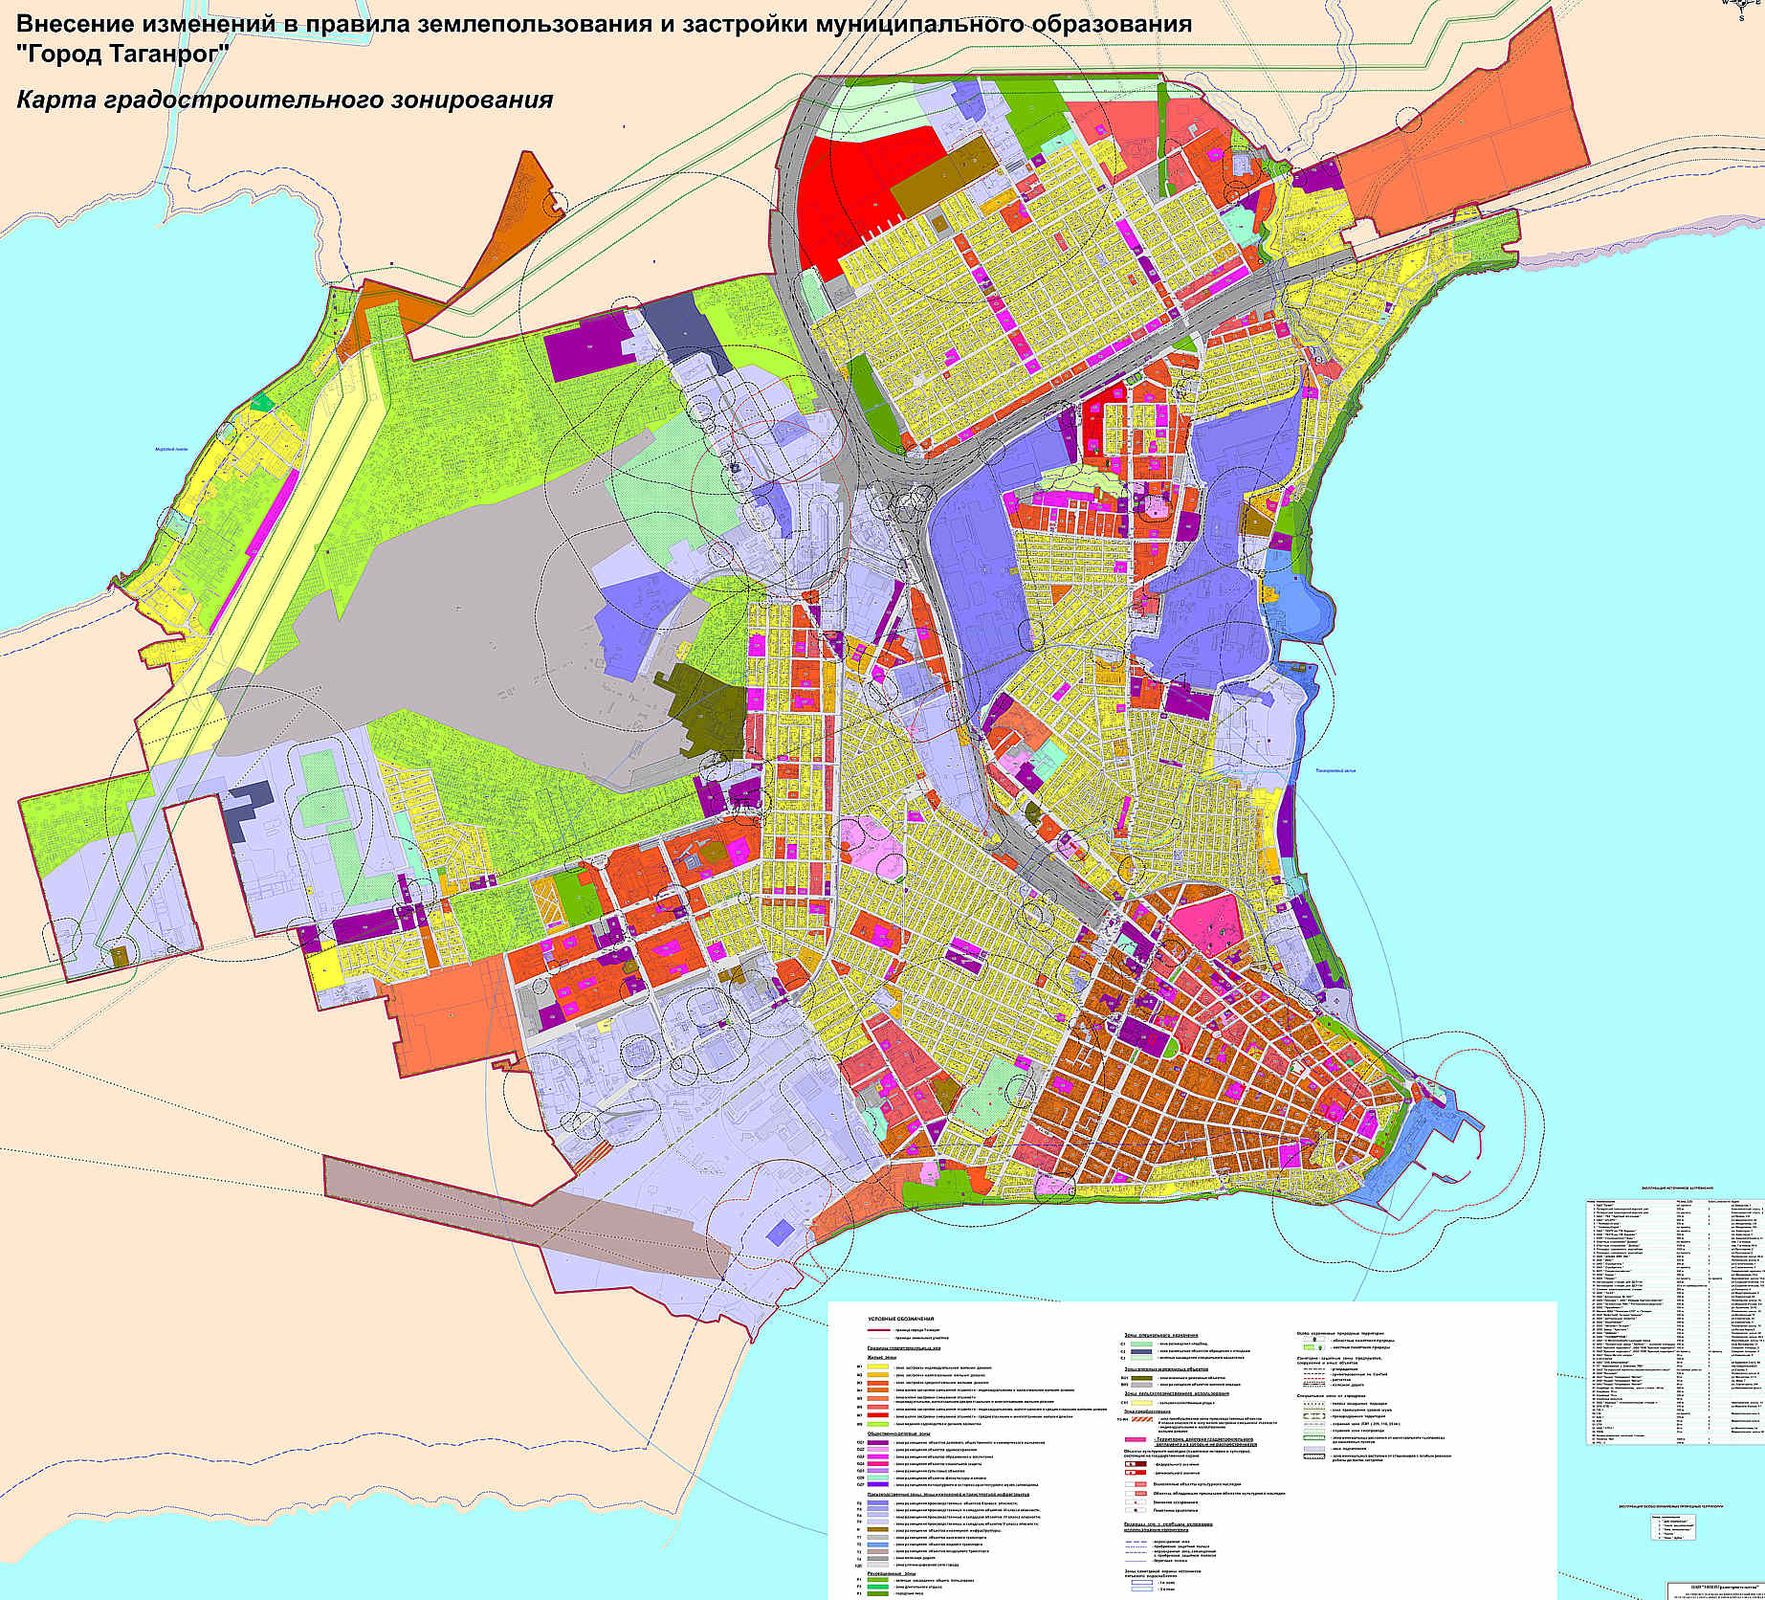 Правила землепользования и застройки муниципального образования город Таганрог